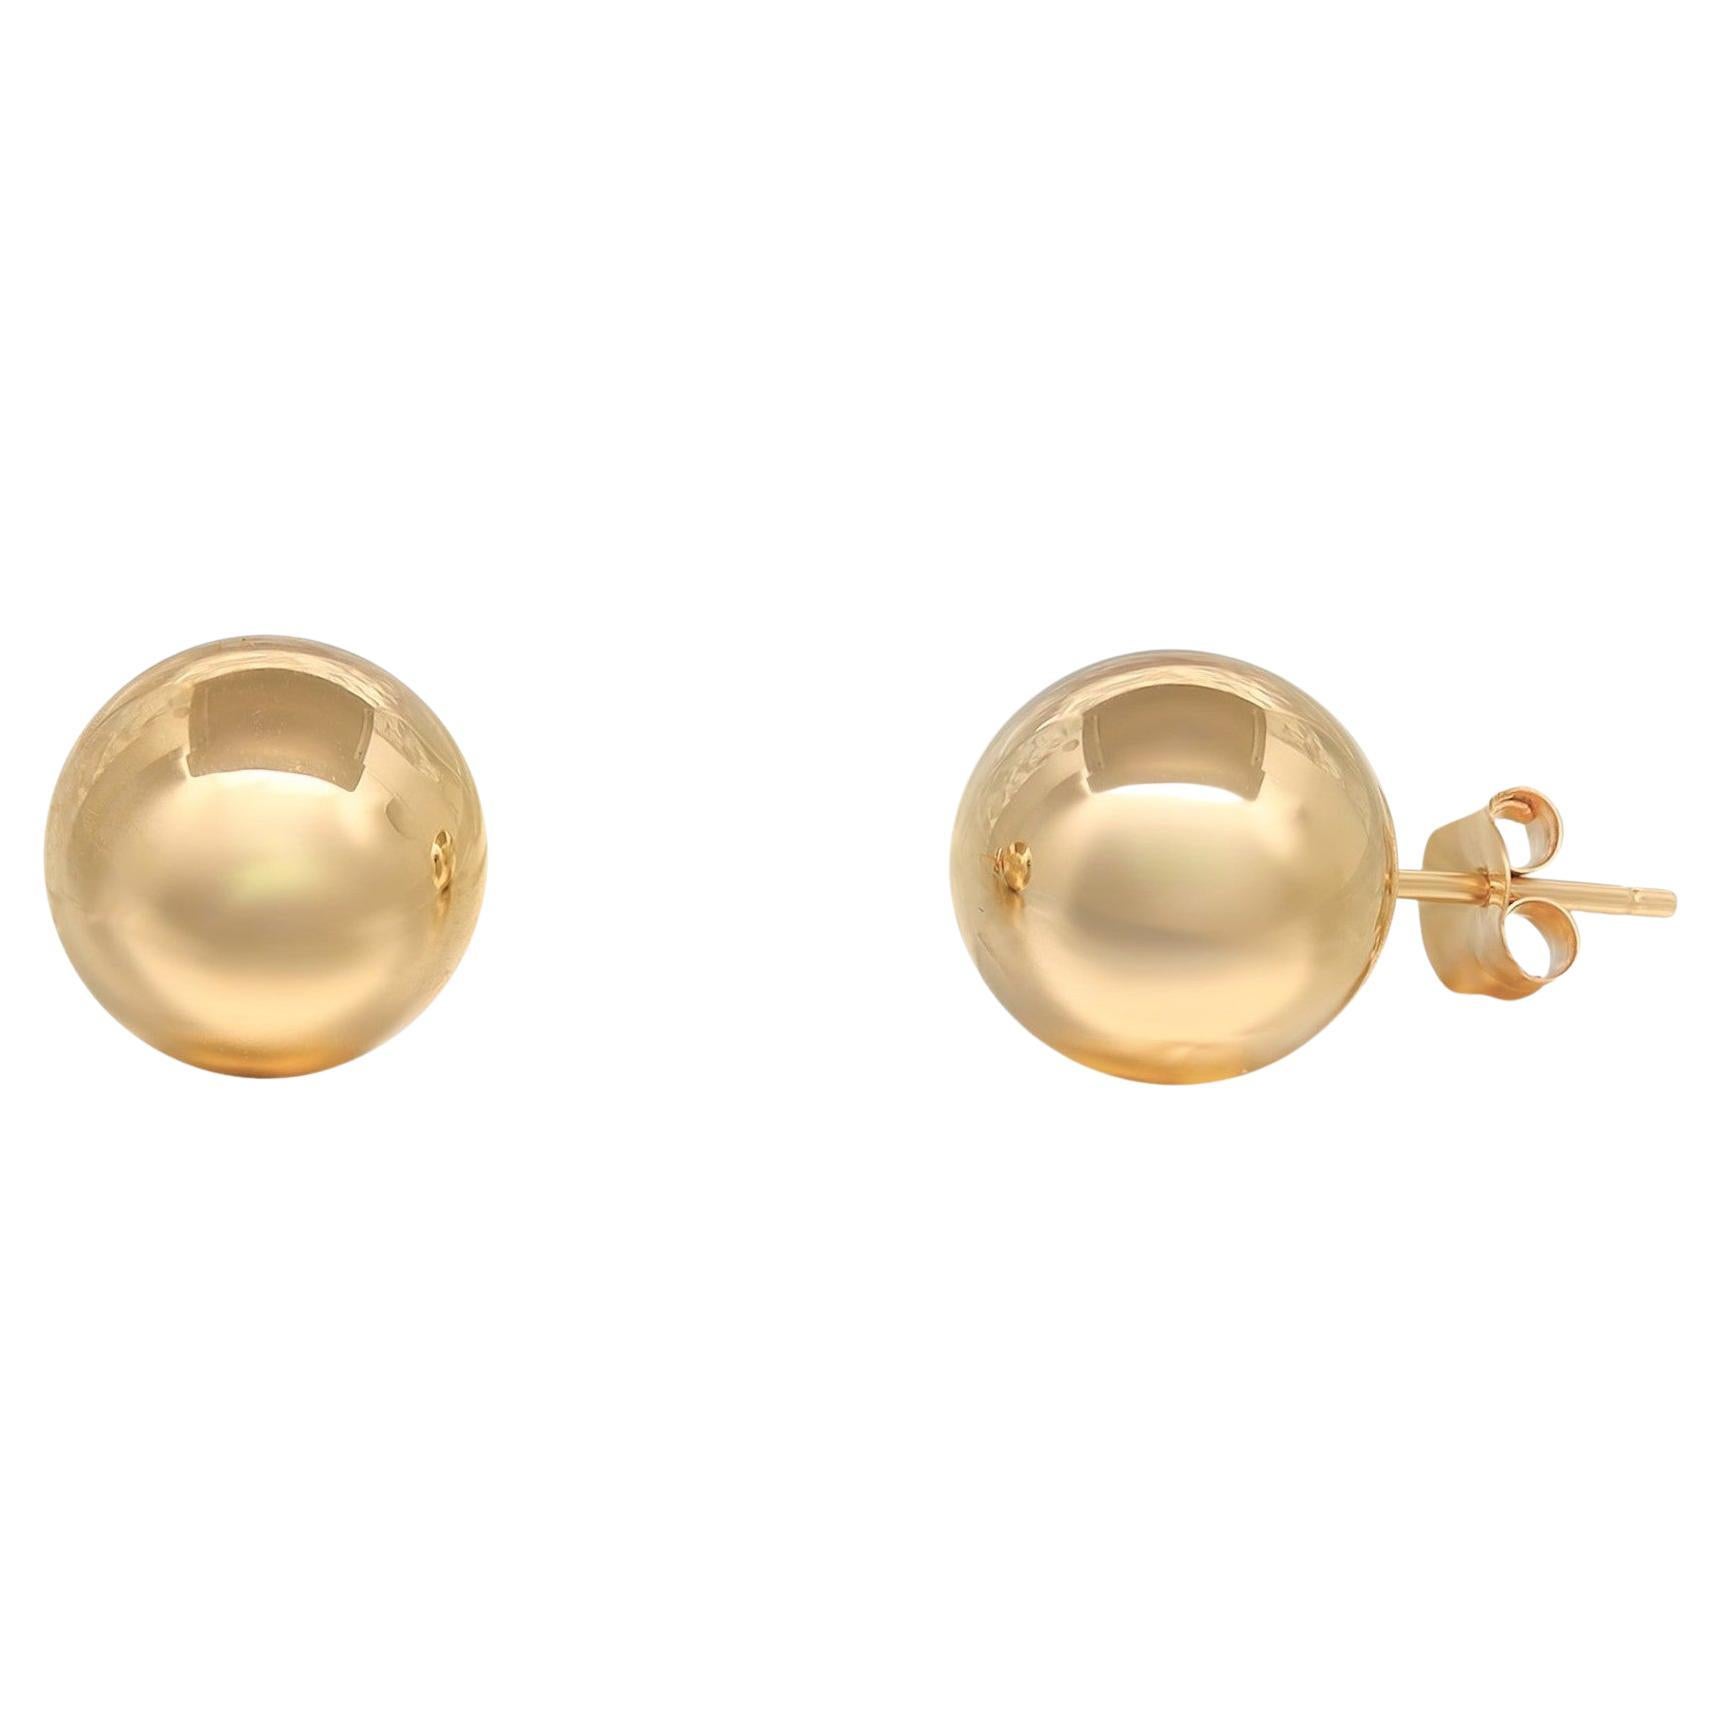 Rachel Koen Bead Ball Stud Earrings 14K Yellow Gold